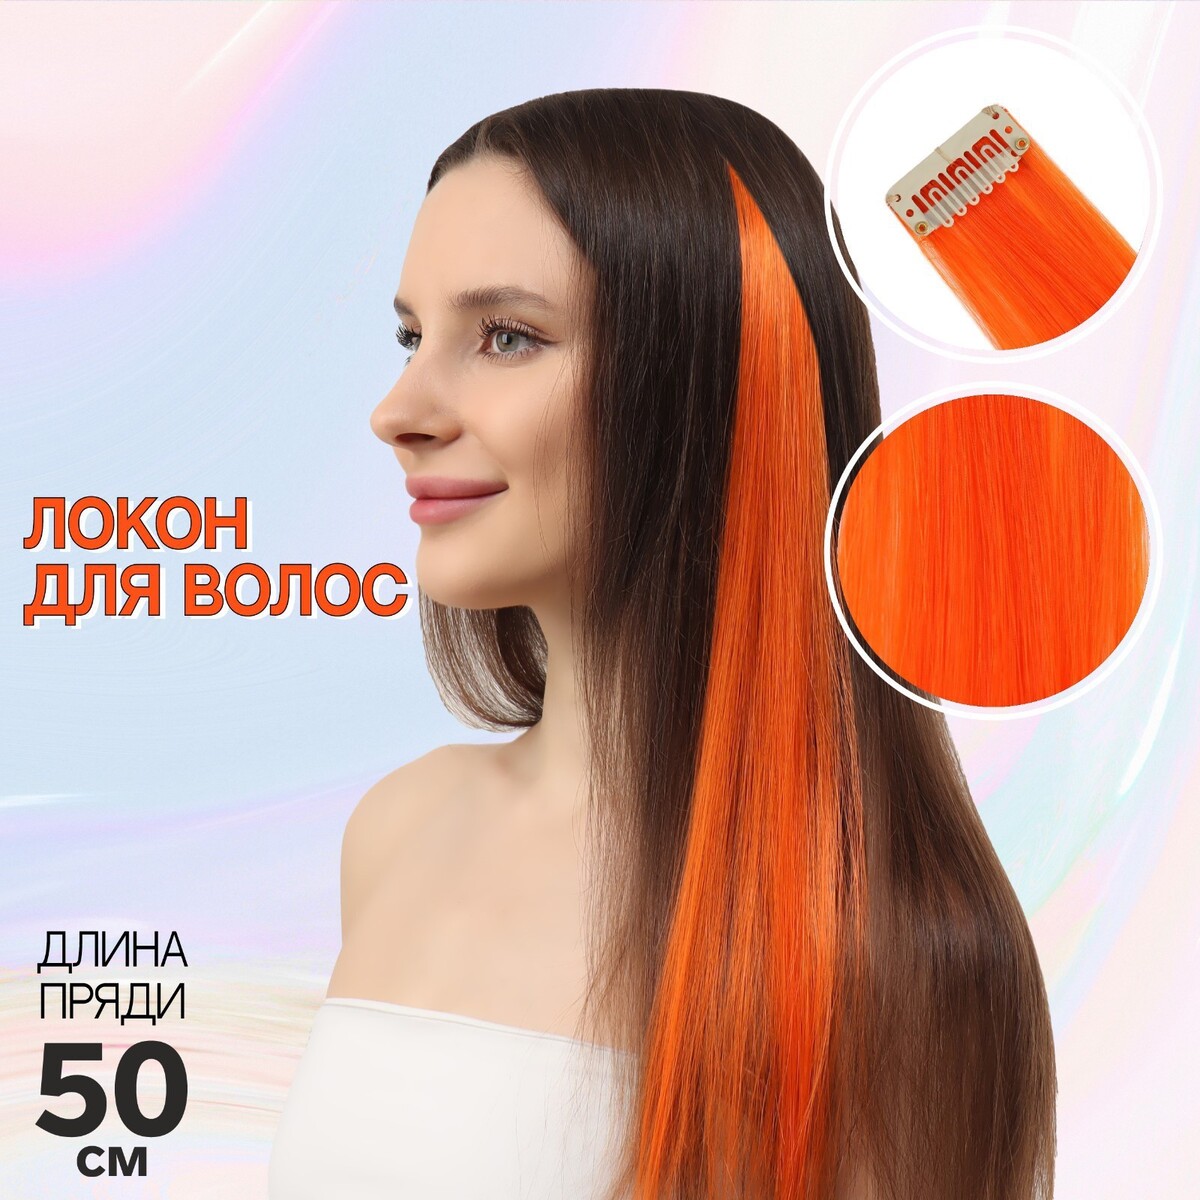 Локон накладной, прямой волос, на заколке, 50 см, 5 гр, цвет оранжевый локон накладной прямой волос на заколке 50 см 5 гр тёмно русый